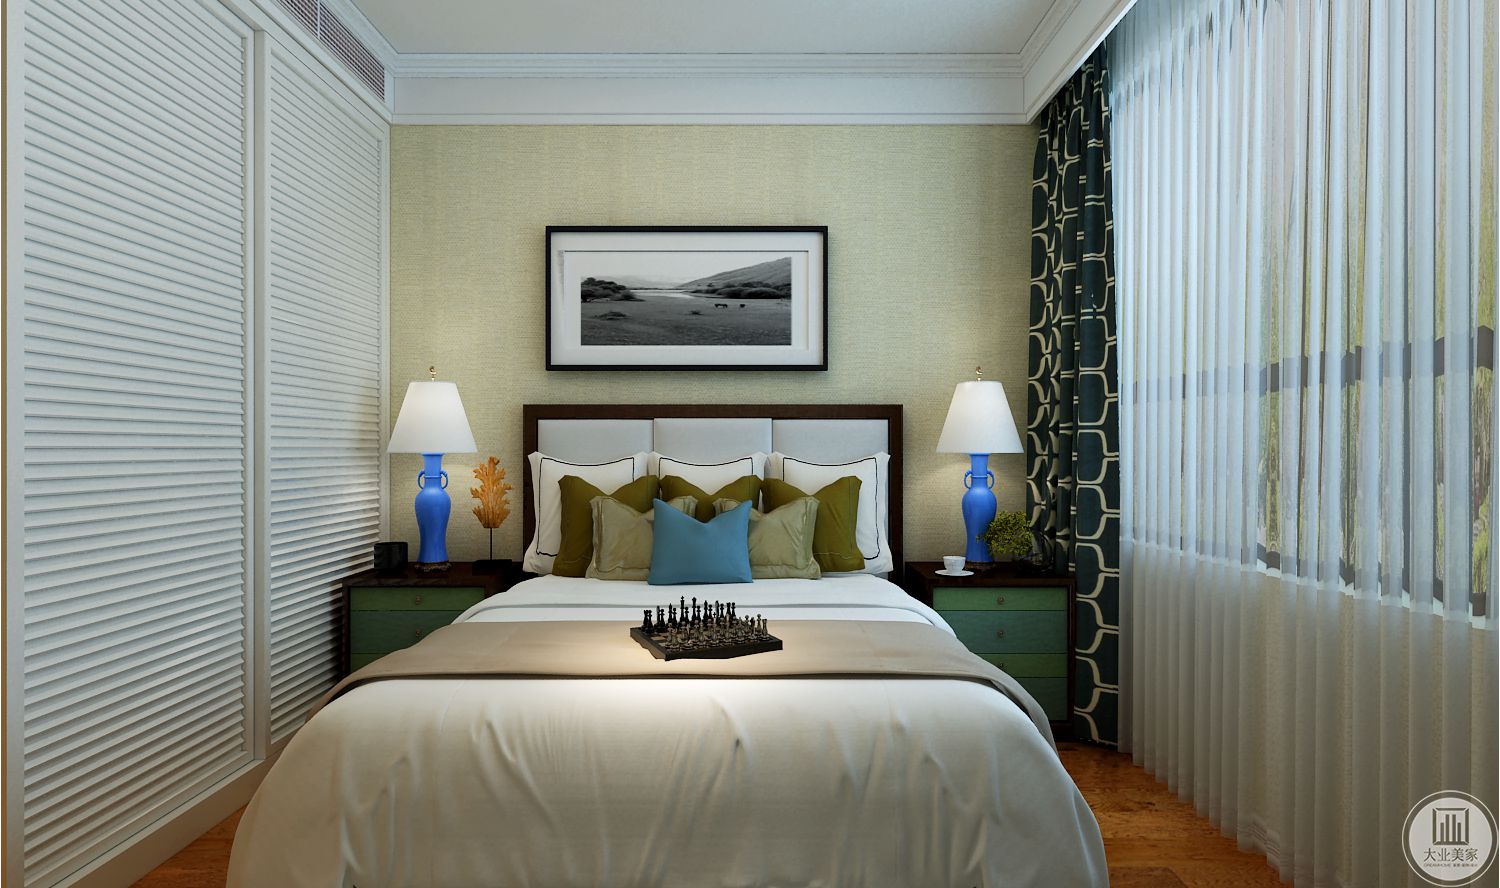 客房装修效果图：背景墙铺贴浅黄色壁纸，用黑白风景画装饰，白色大床两侧搭配浅绿色床头柜。